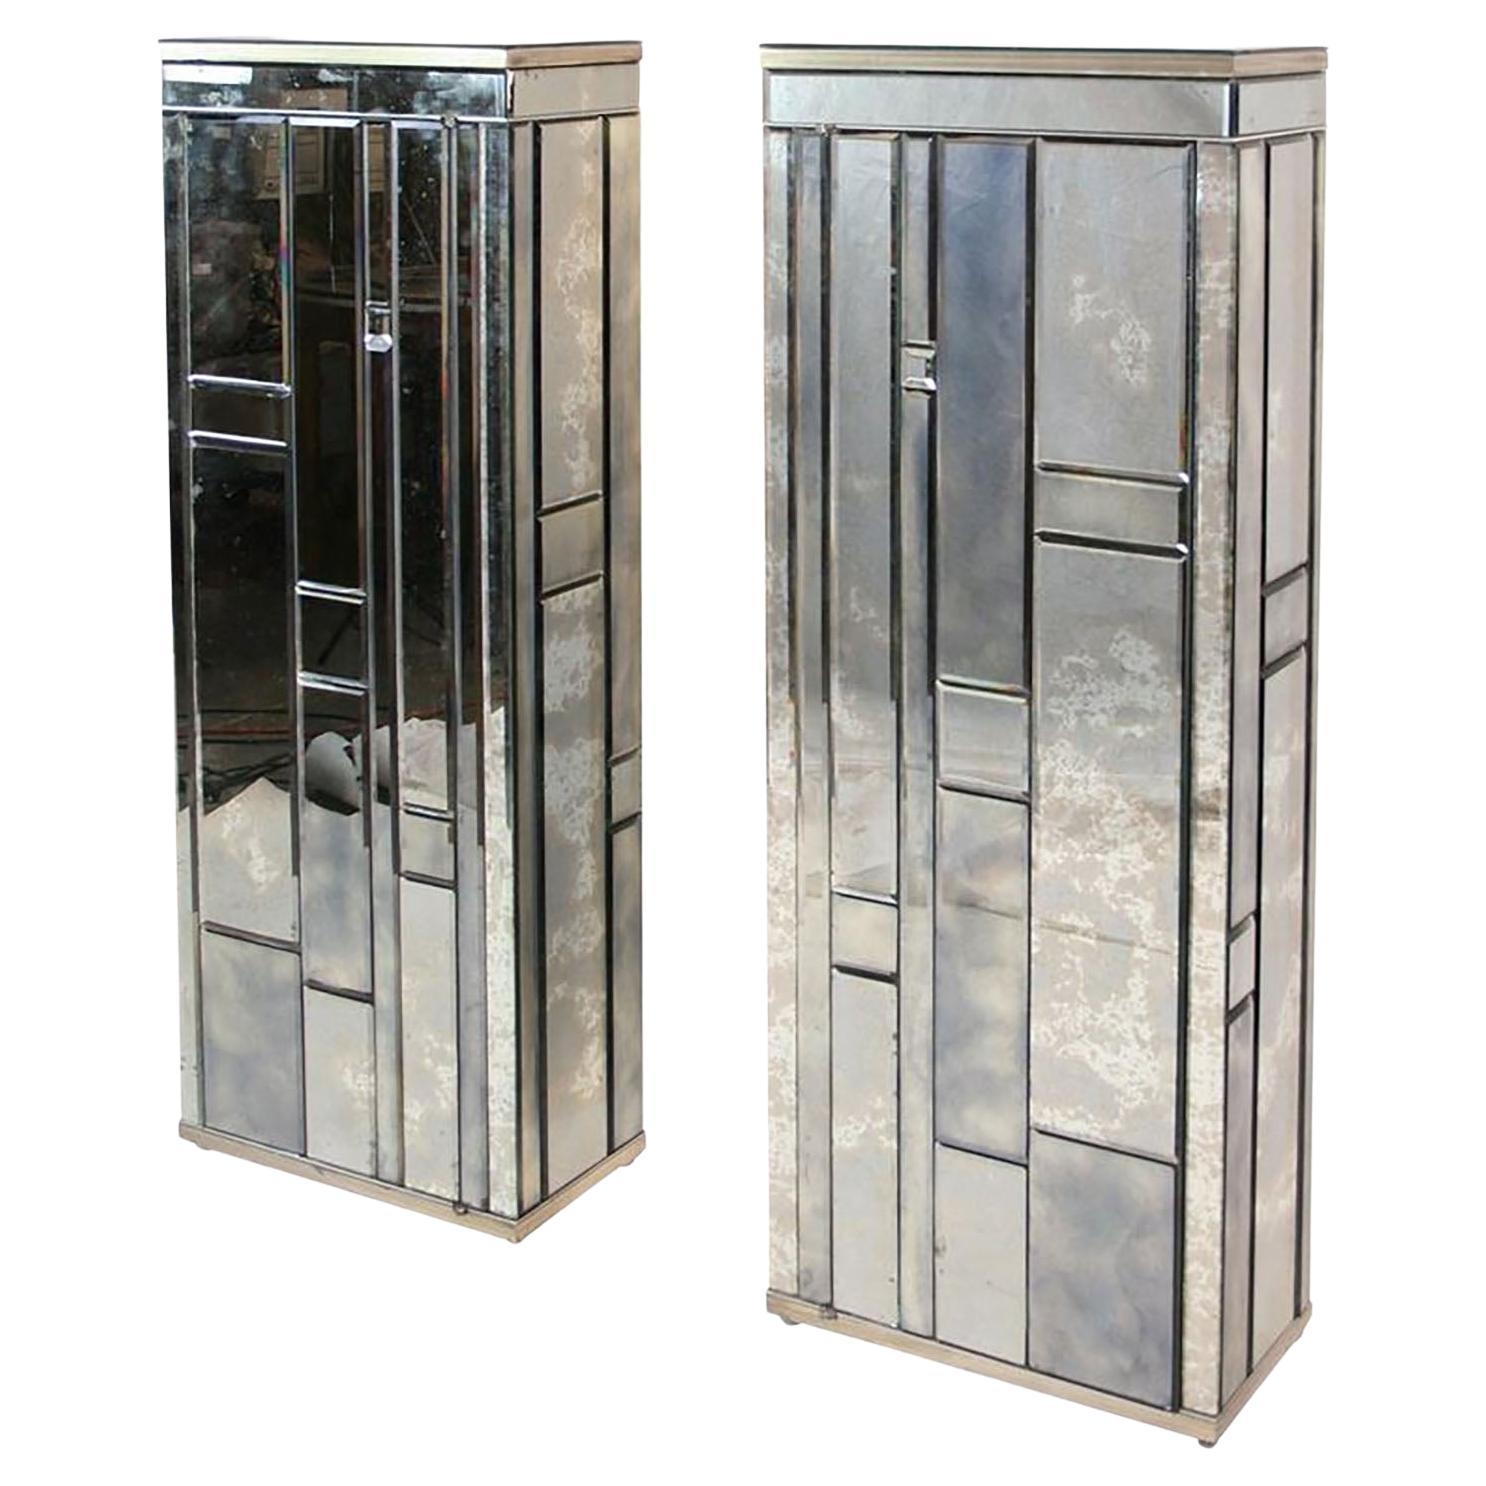  Deux armoires latérales à miroir biseauté